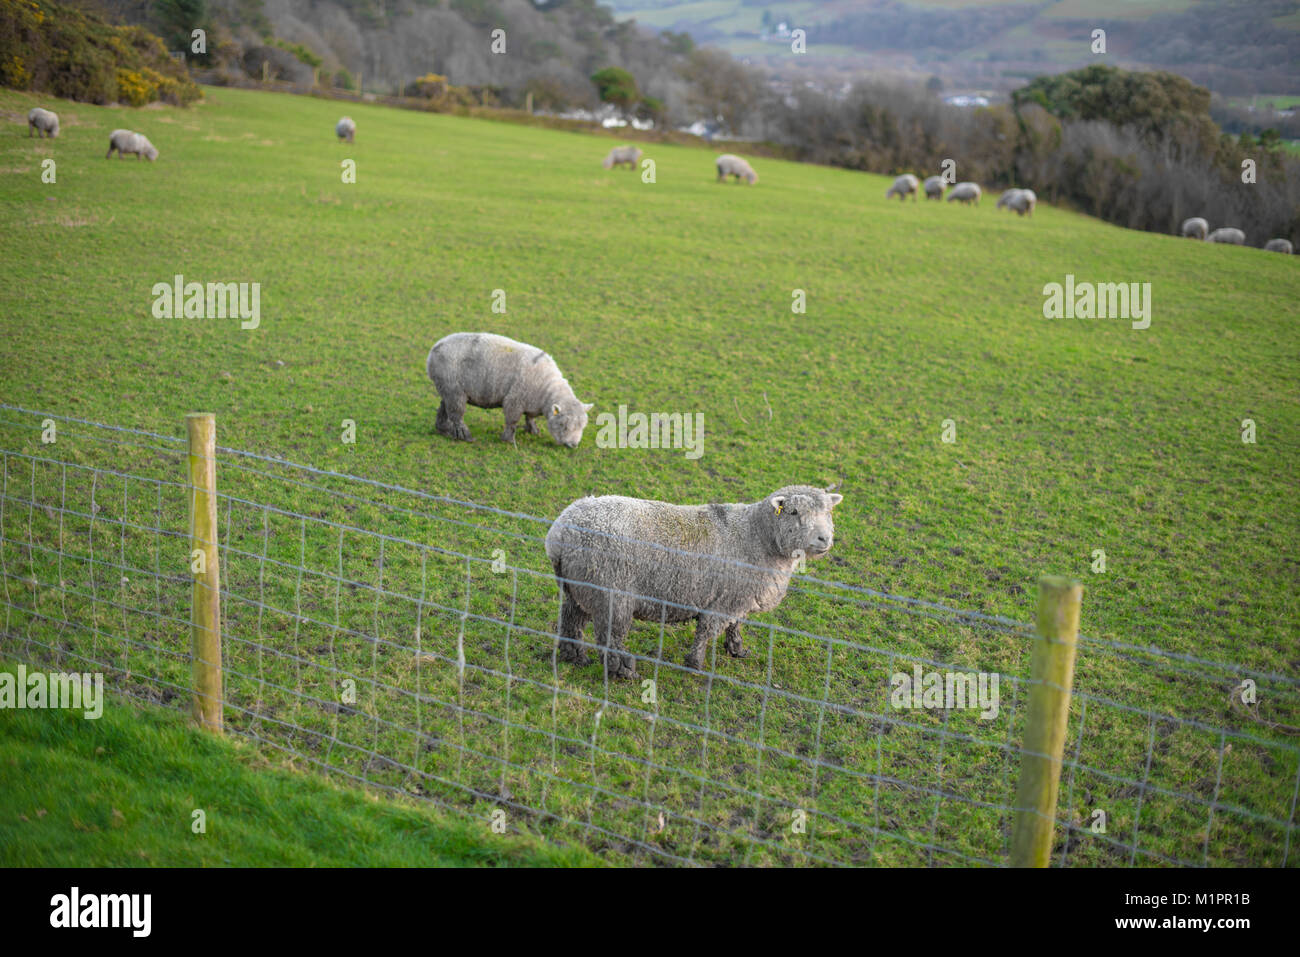 Moutons (2 au premier plan, 12 dans l'arrière-plan) dans une jolie zone de pâturage entouré de bois, à Aberystwyth, Pays de Galles Banque D'Images